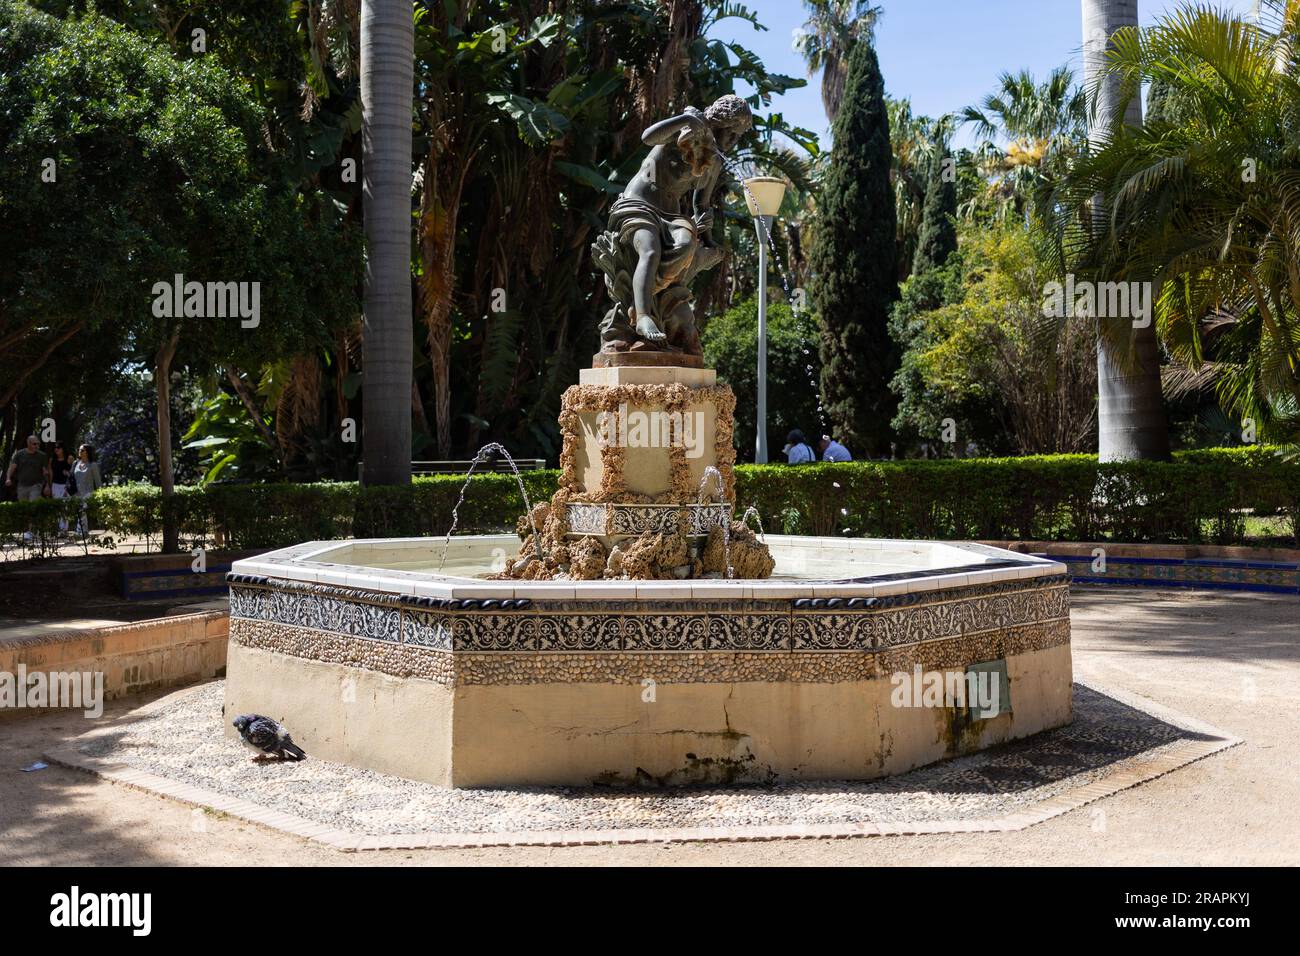 L'une des belles fontaines de Malaga Parque, le parc de la ville de Malaga, Espagne. Banque D'Images